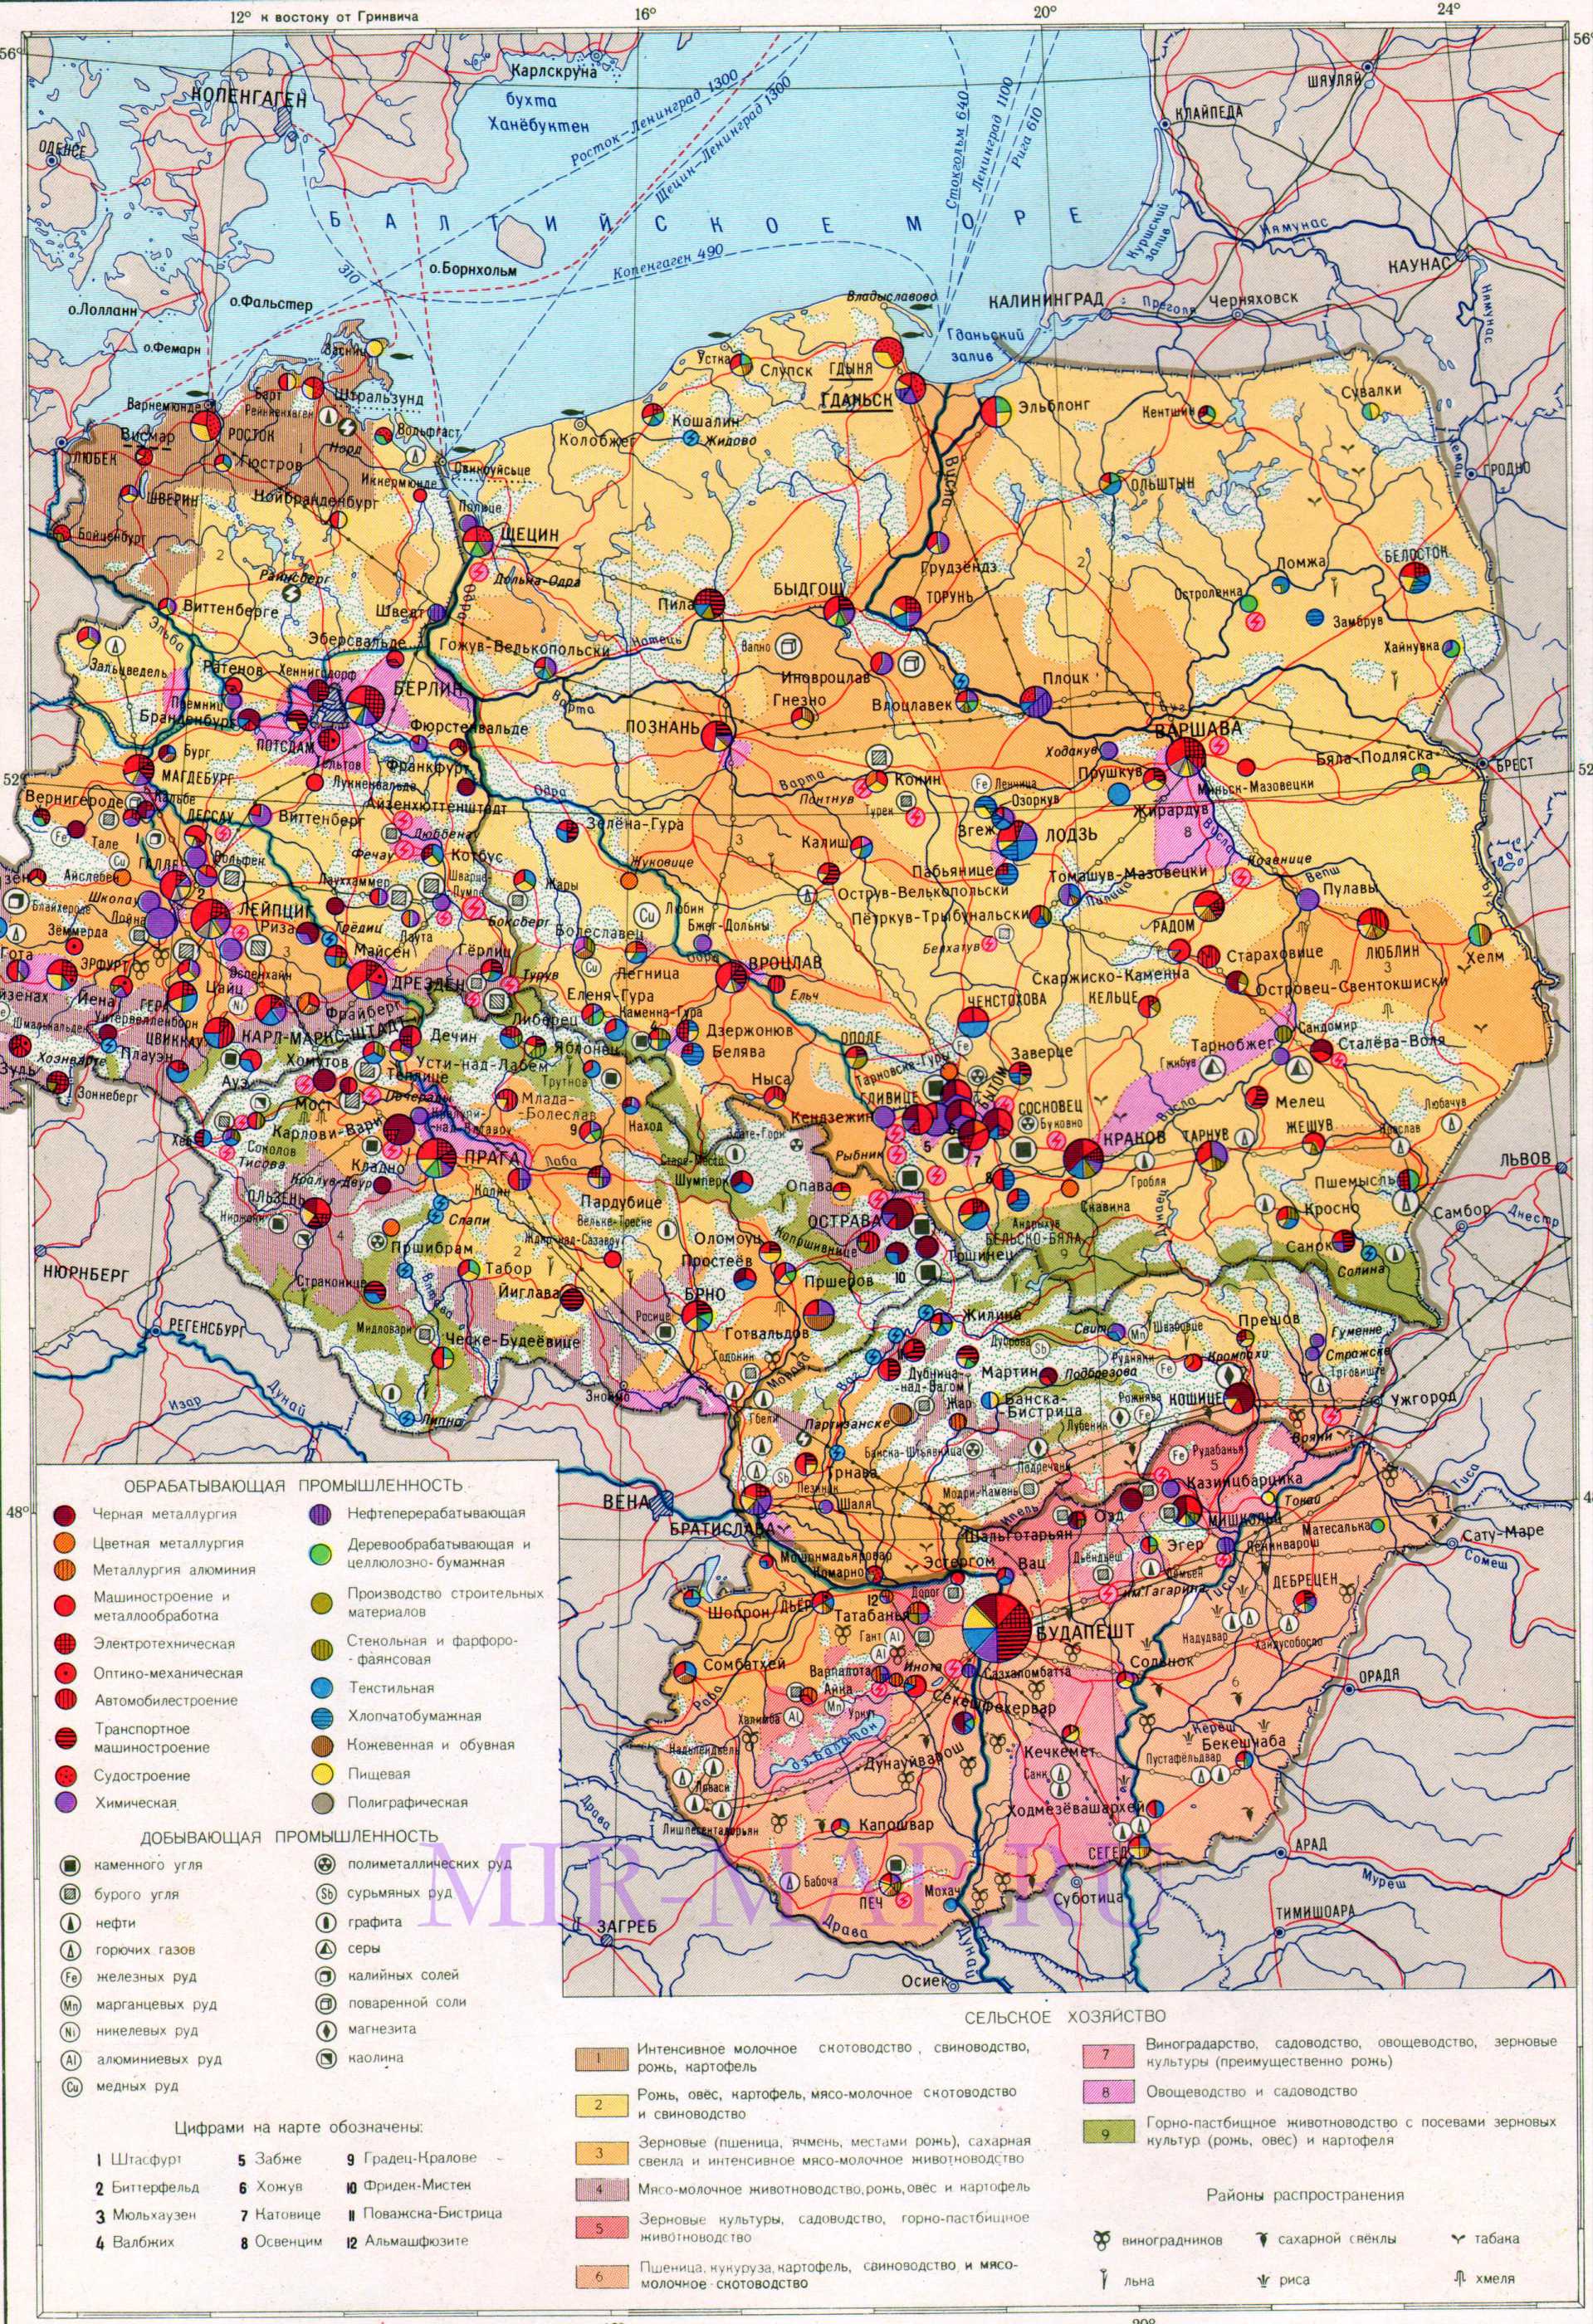 Экономическая карта Польши, Венгрии, Чехии, A0 - 